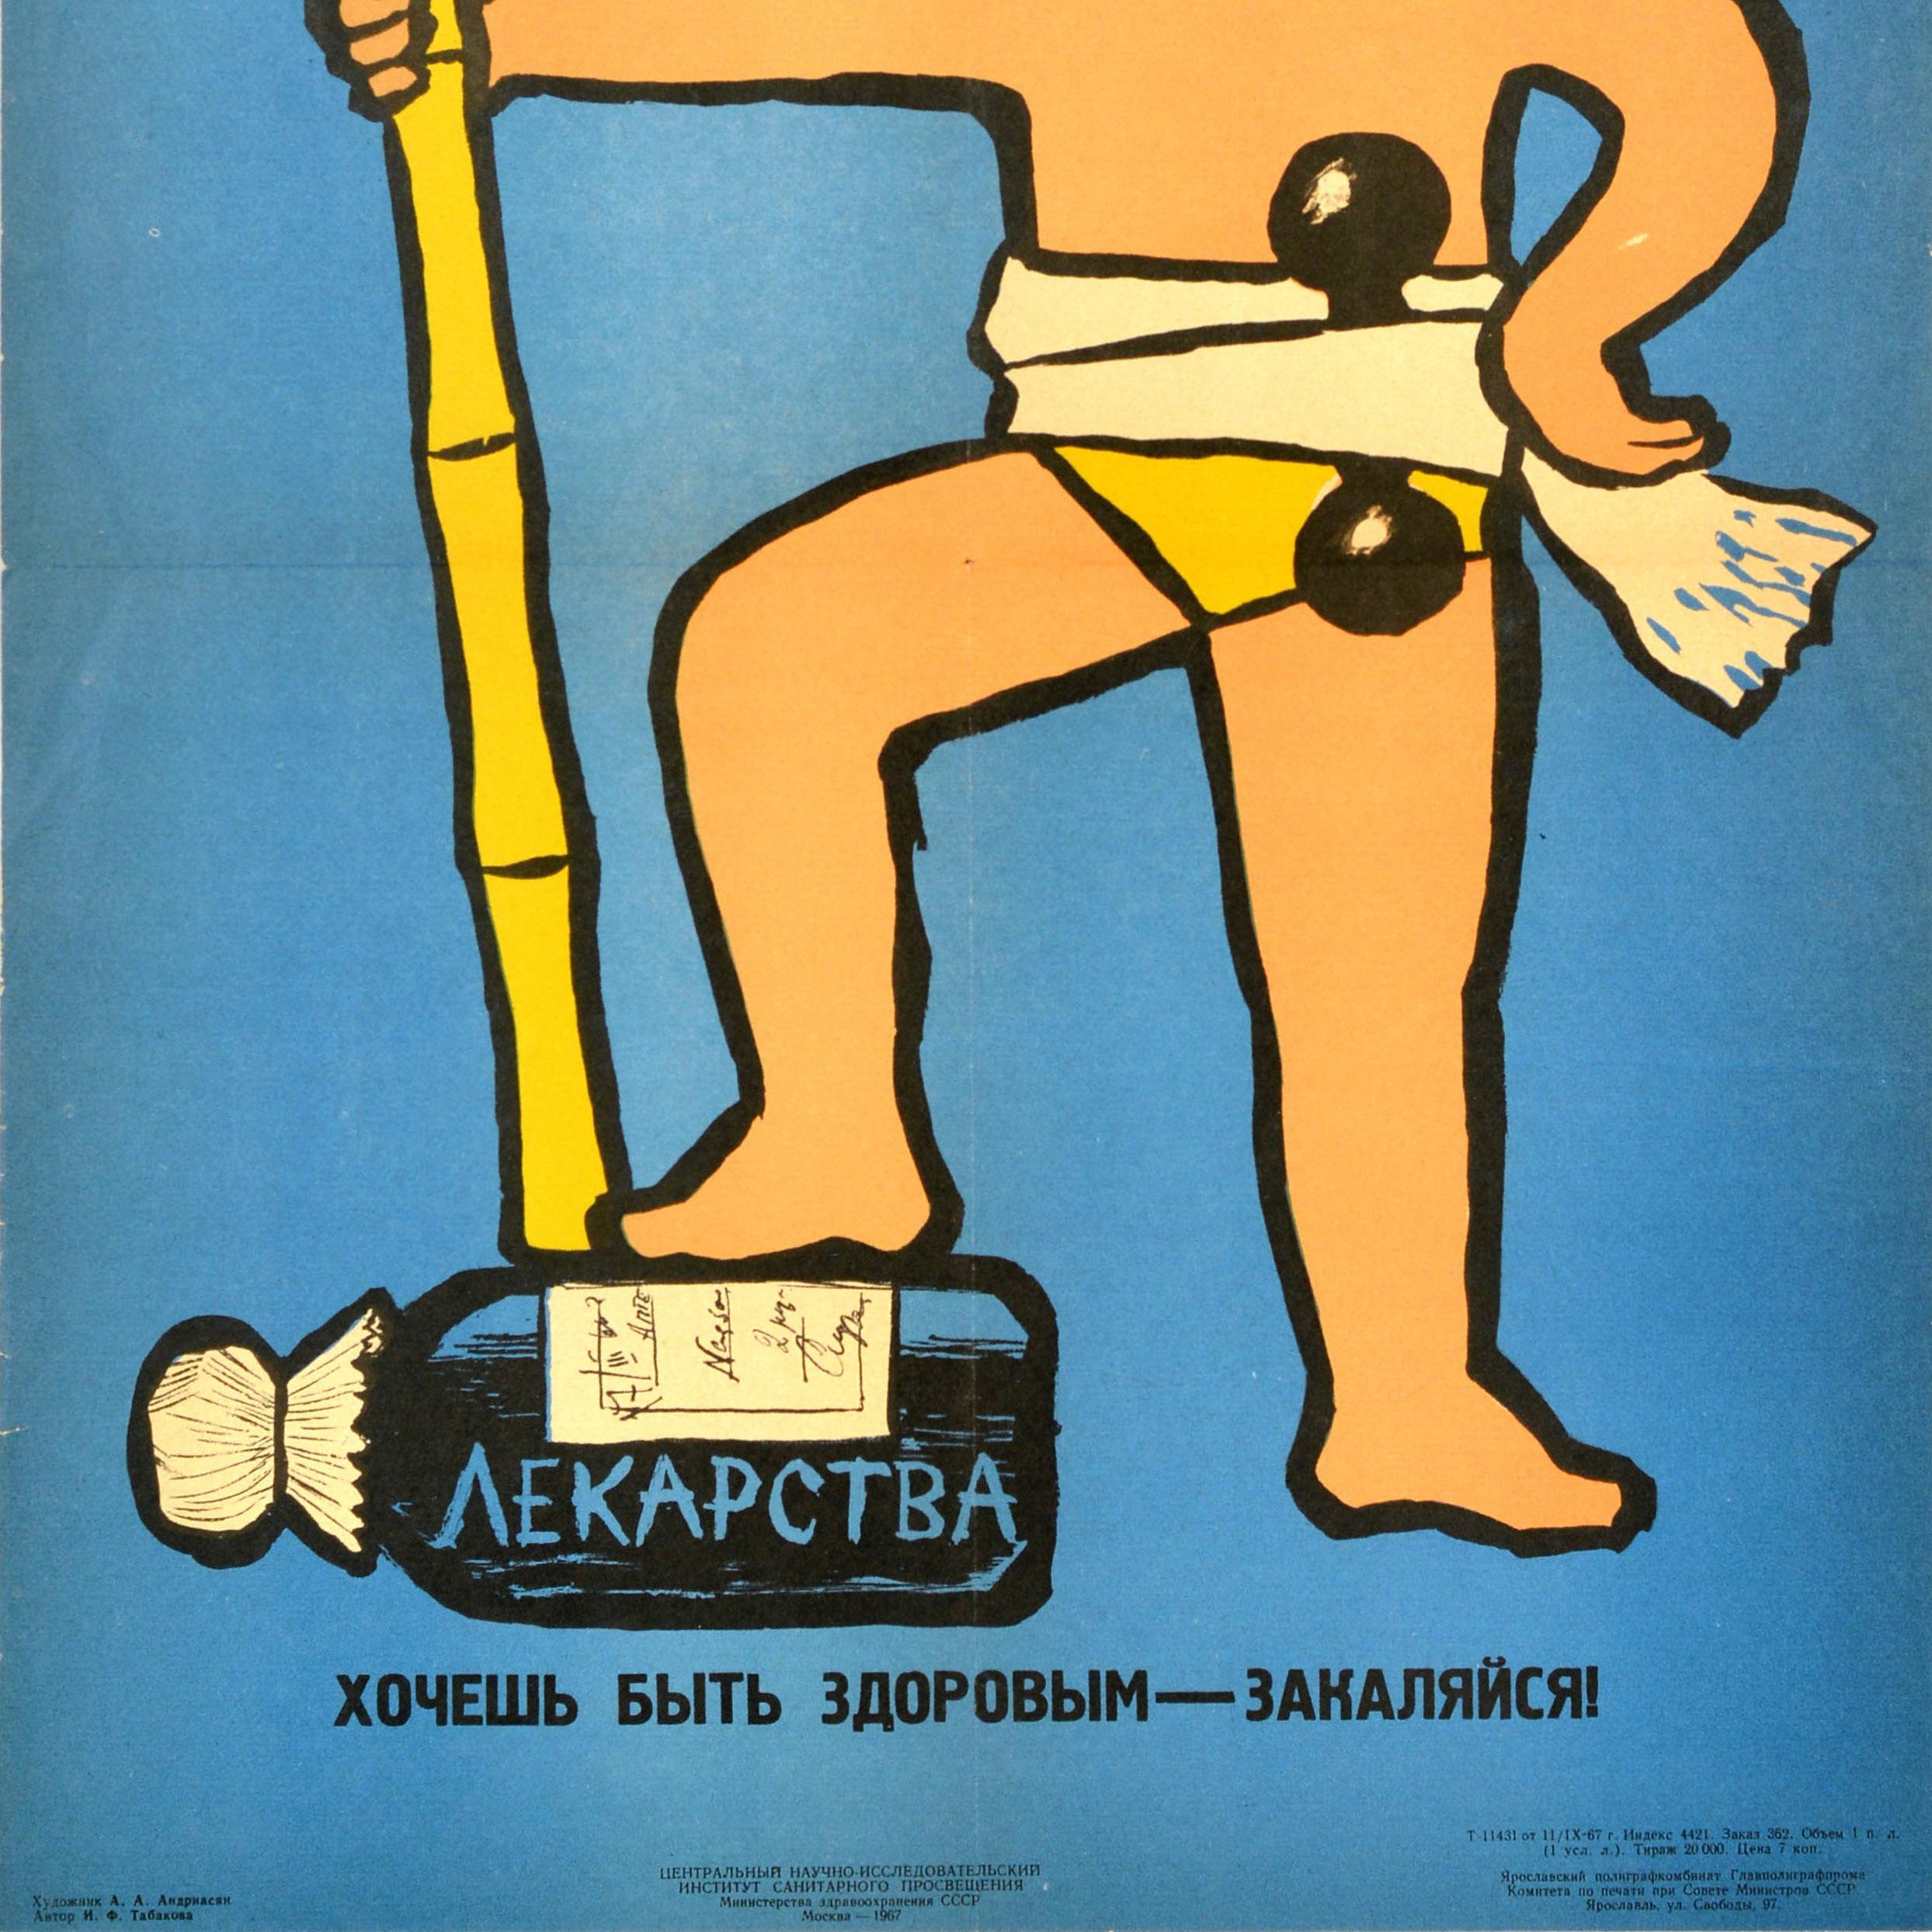 Originales sowjetisches Gesundheitspropagandaplakat - Wenn du gesund sein willst, mach Kältetraining - mit einer Illustration eines lächelnden Jungen, der eine bunt gestreifte Badekappe trägt, eine Hantel um die Taille gebunden hat und einen